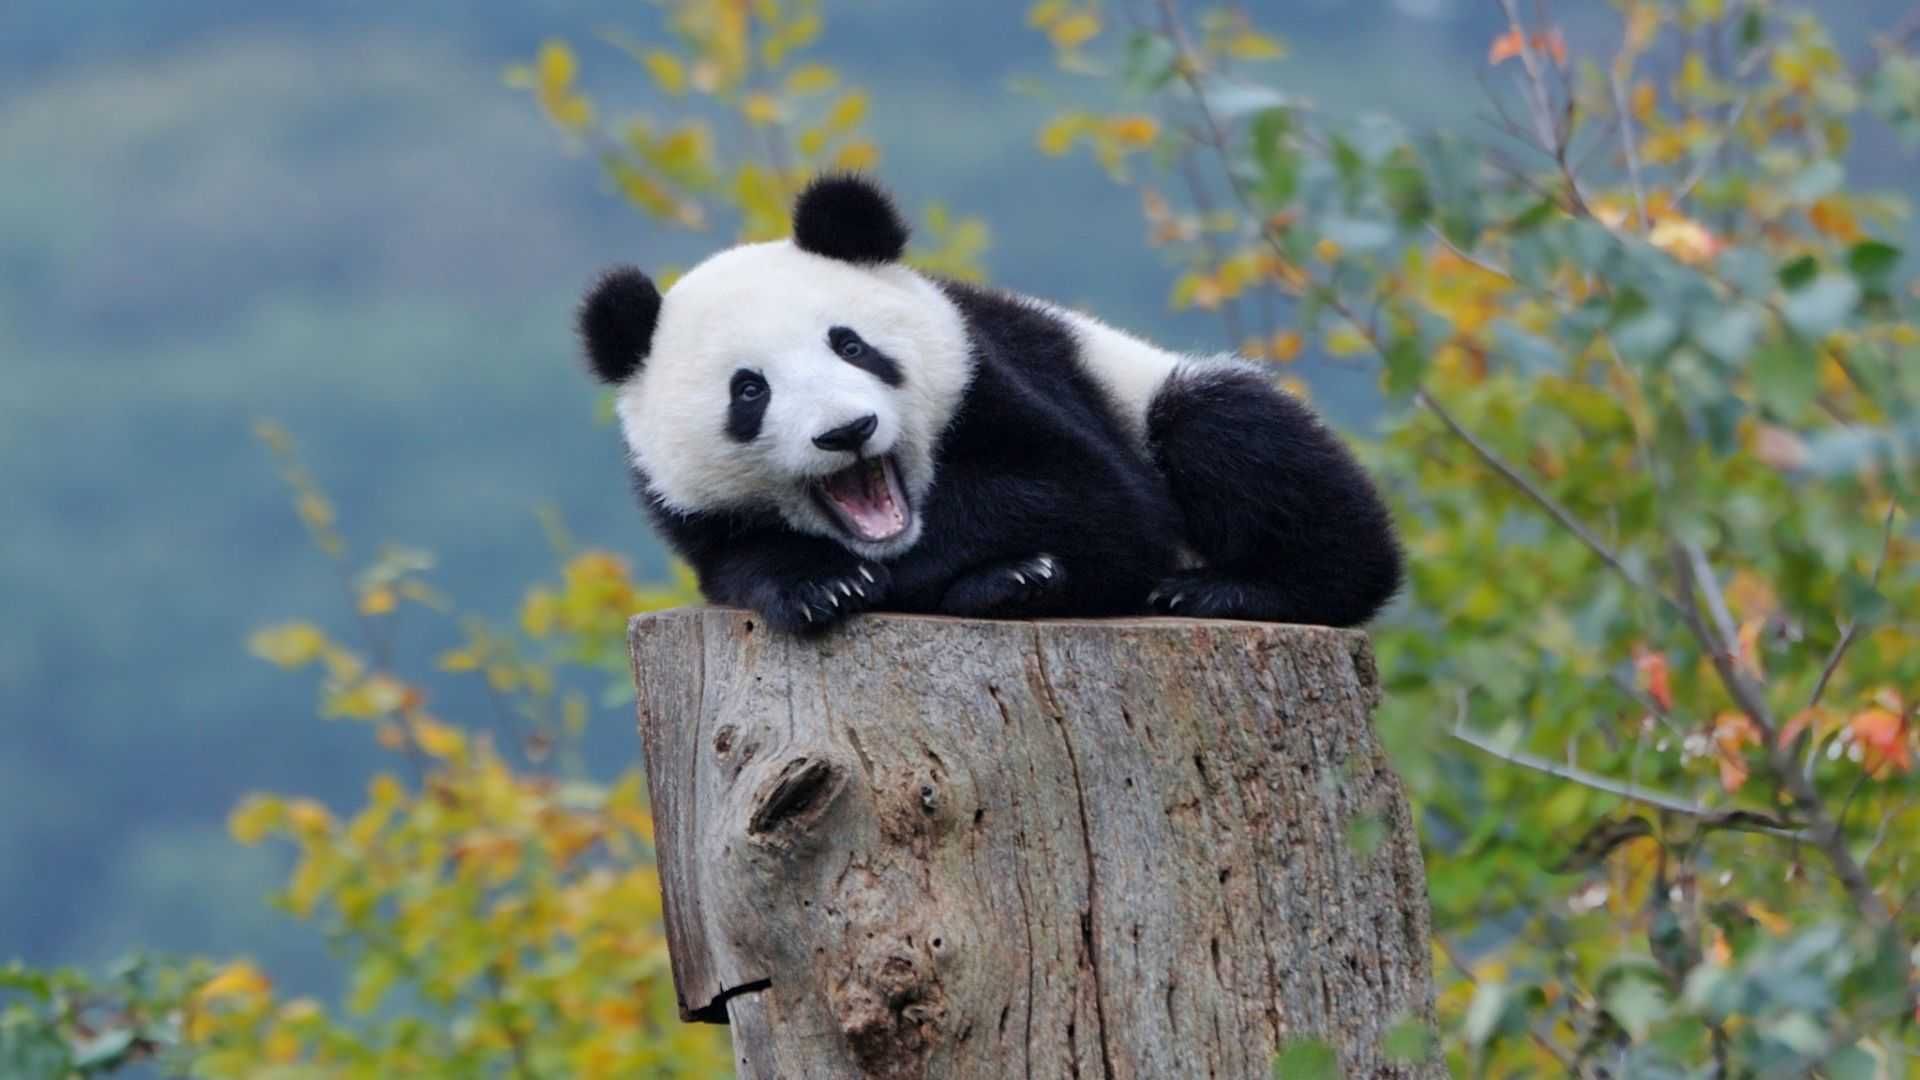 Panda Bear Photo